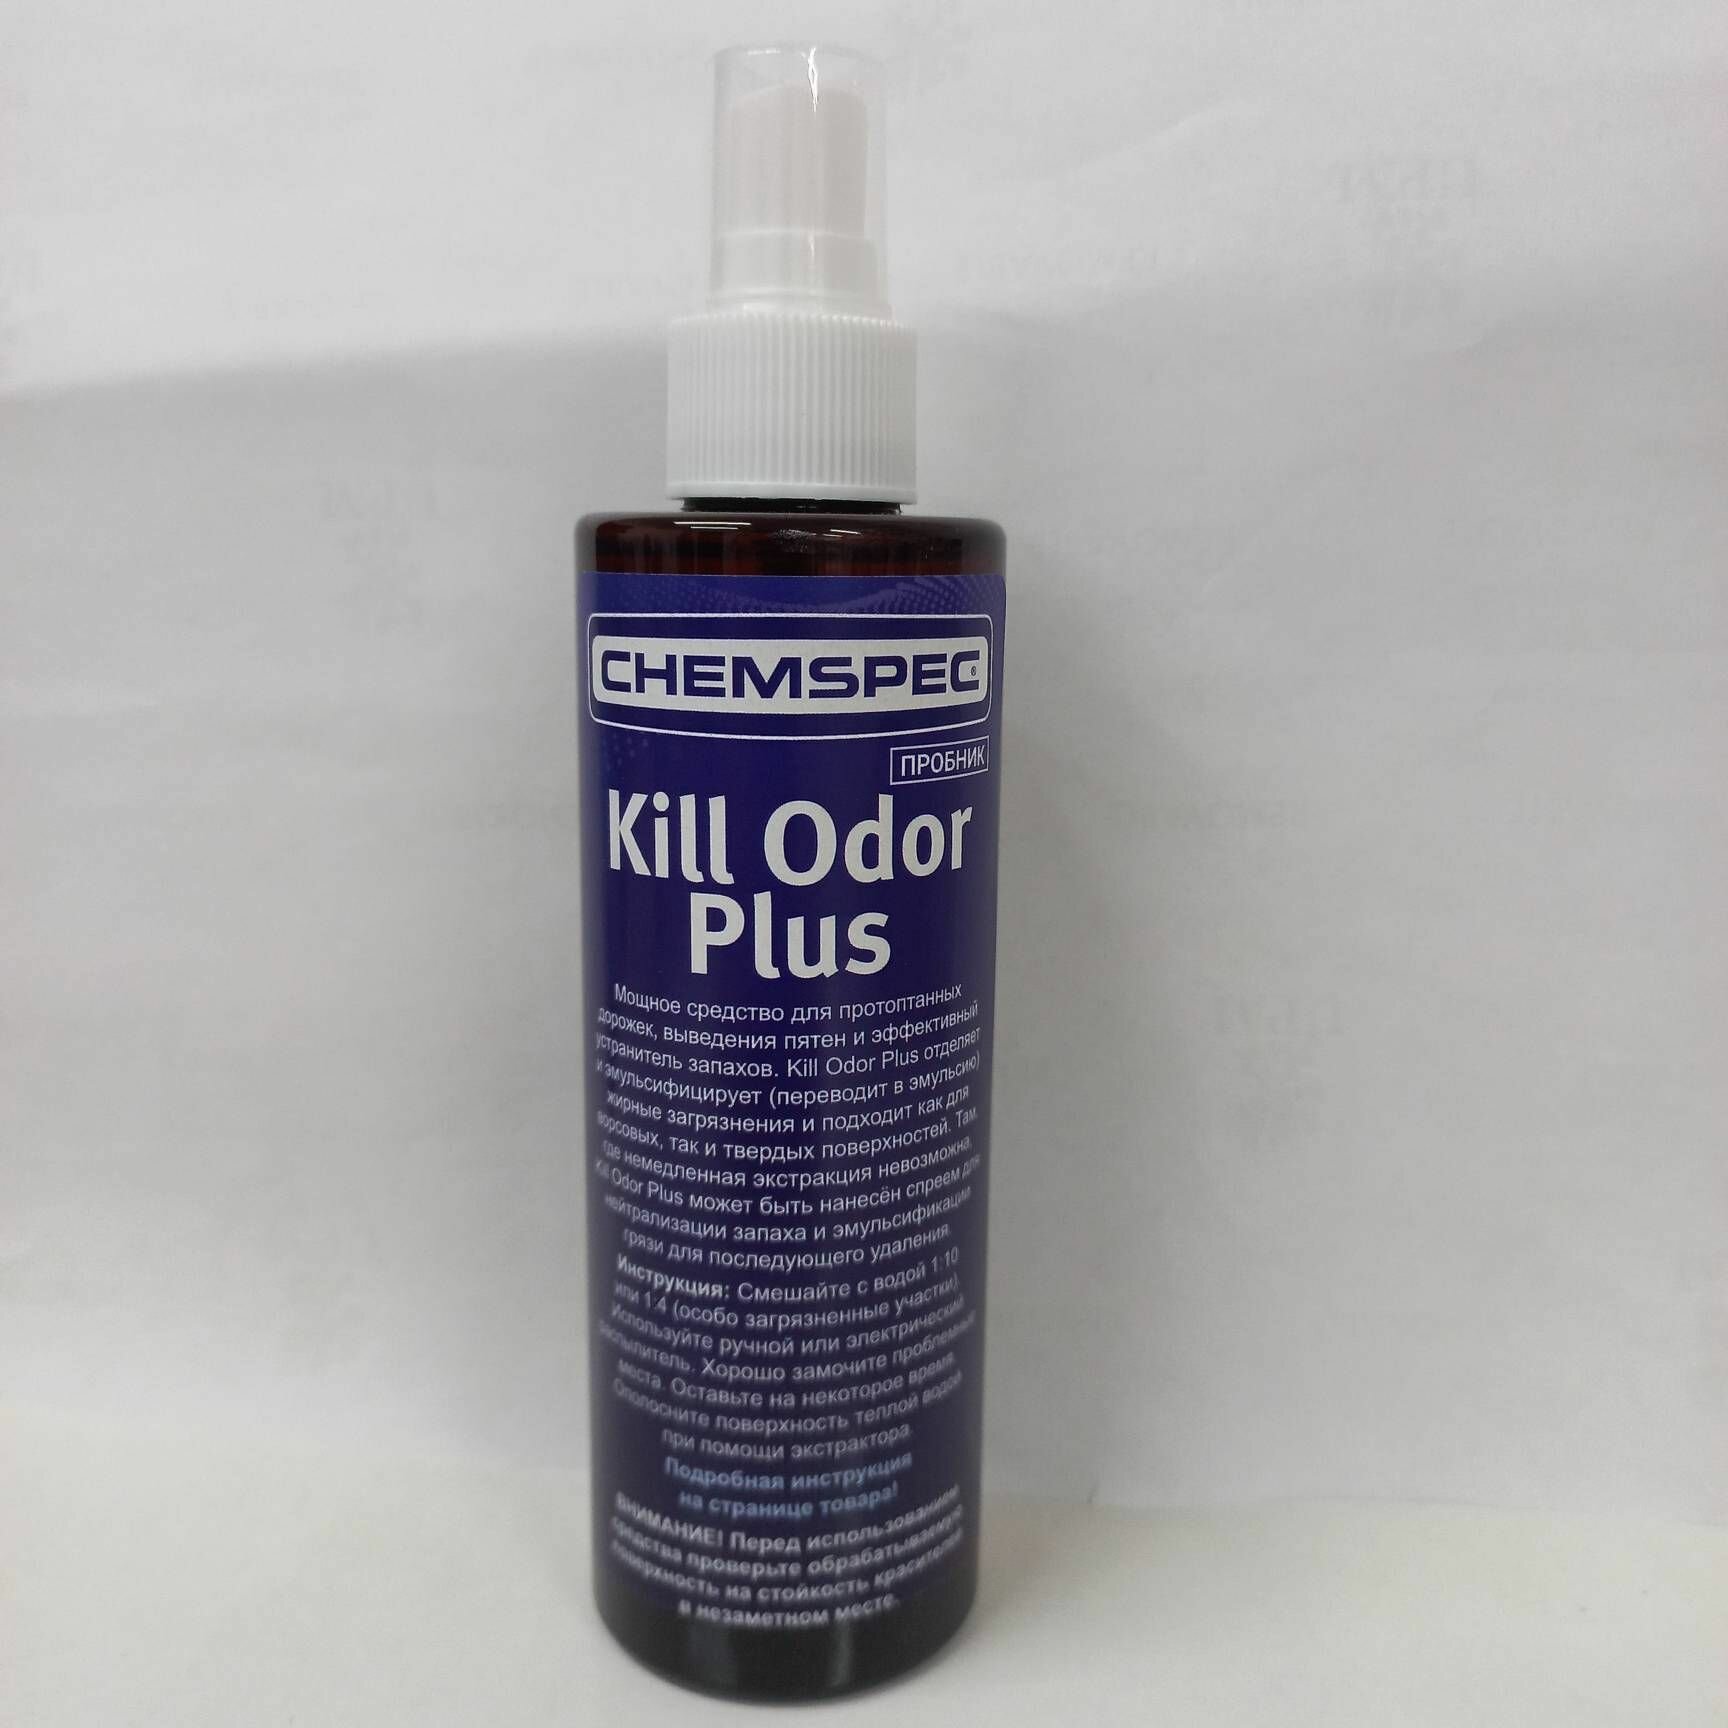 Kill Odor Plus Chemspec Эффективное средство для протоптанных дорожек выведения пятен и устранения запахов 02 л